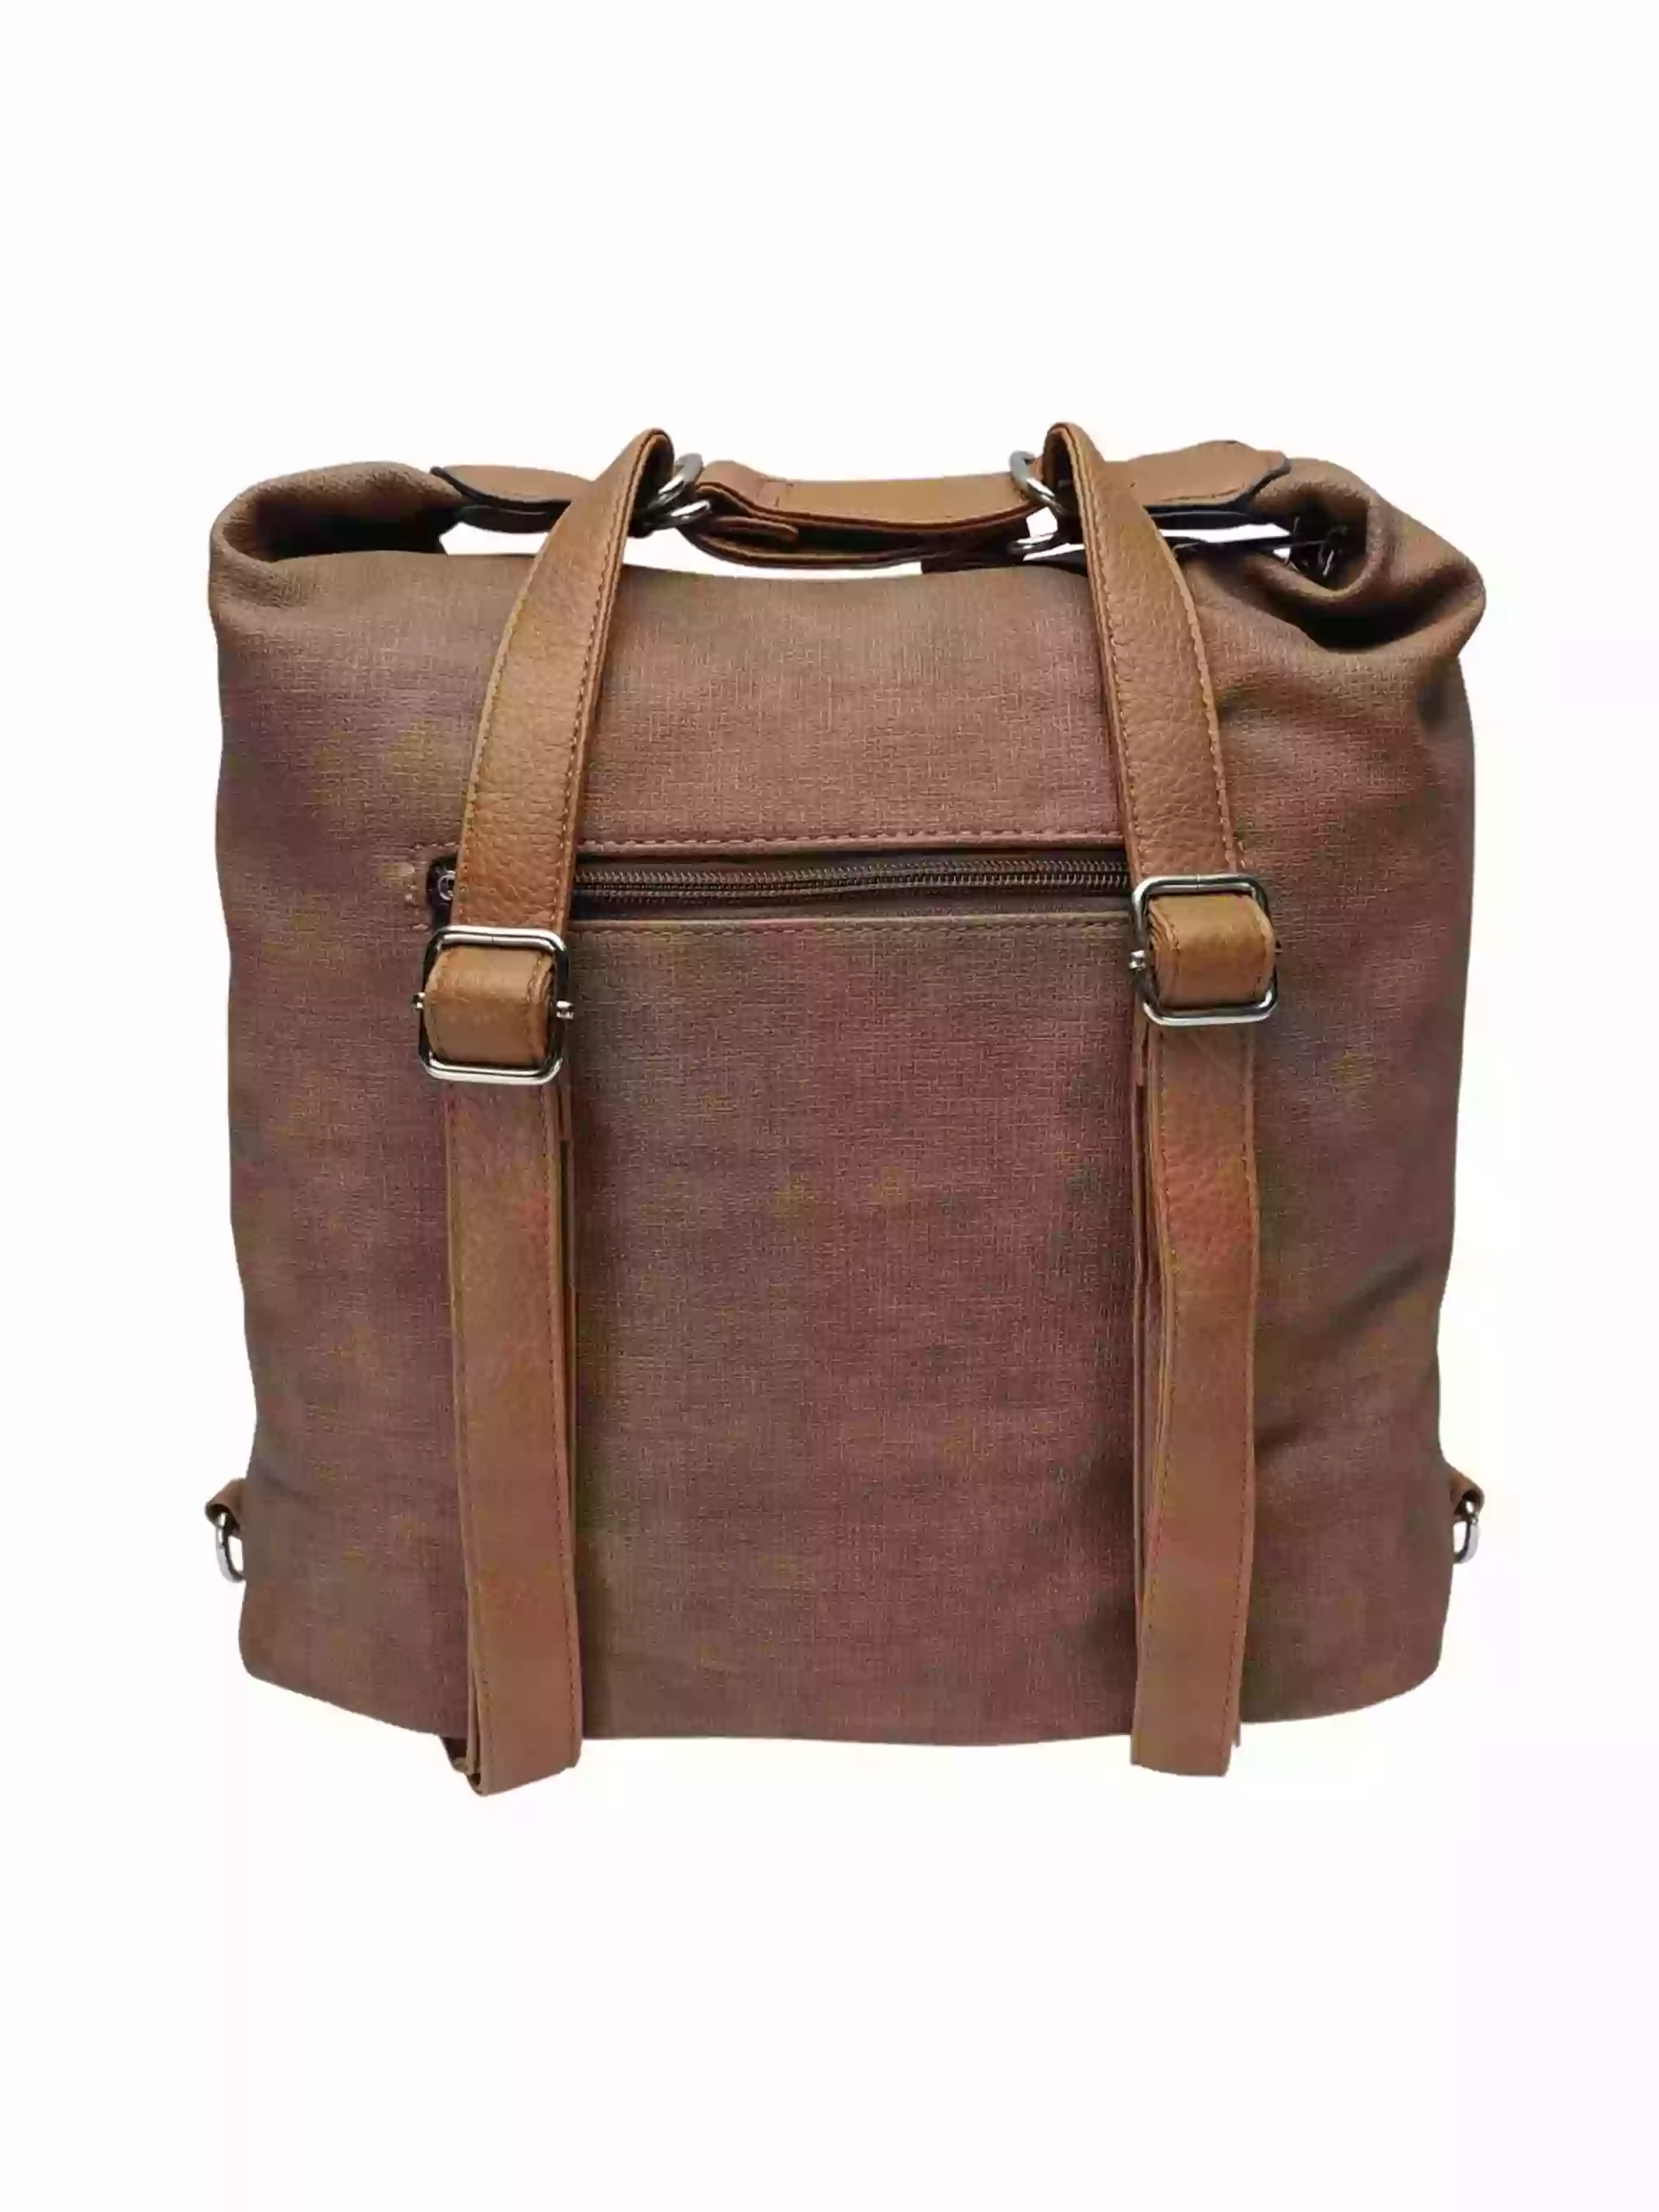 Velká středně hnědá kabelka a batoh 2v1 s kapsami, Tapple, H181175N, zadní strana kabelky a batohu 2v1 s popruhy